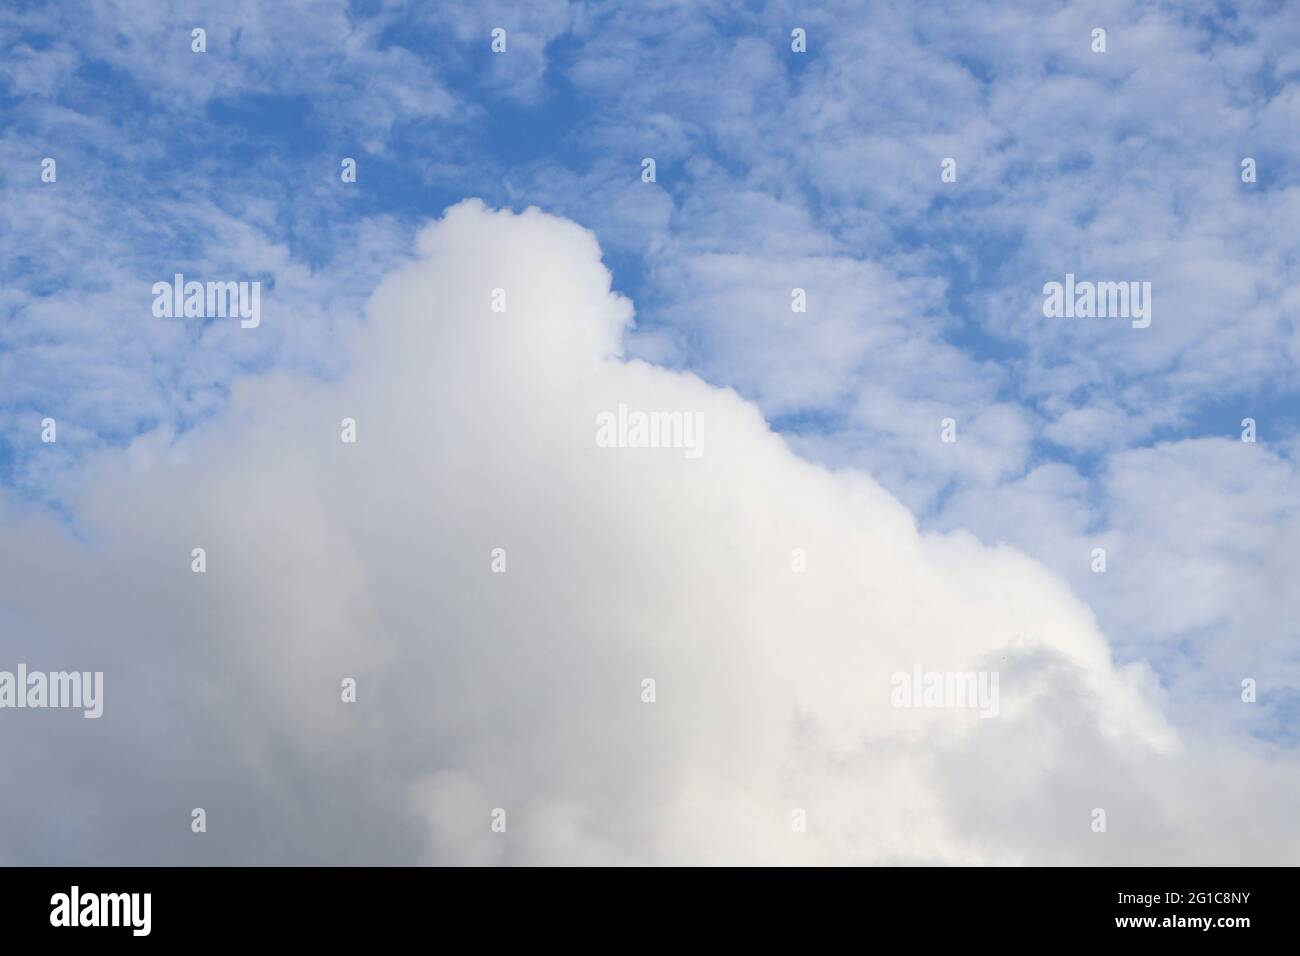 coton blanc bouffé comme les nuages formant des motifs dans le ciel bleu pendant la journée Banque D'Images